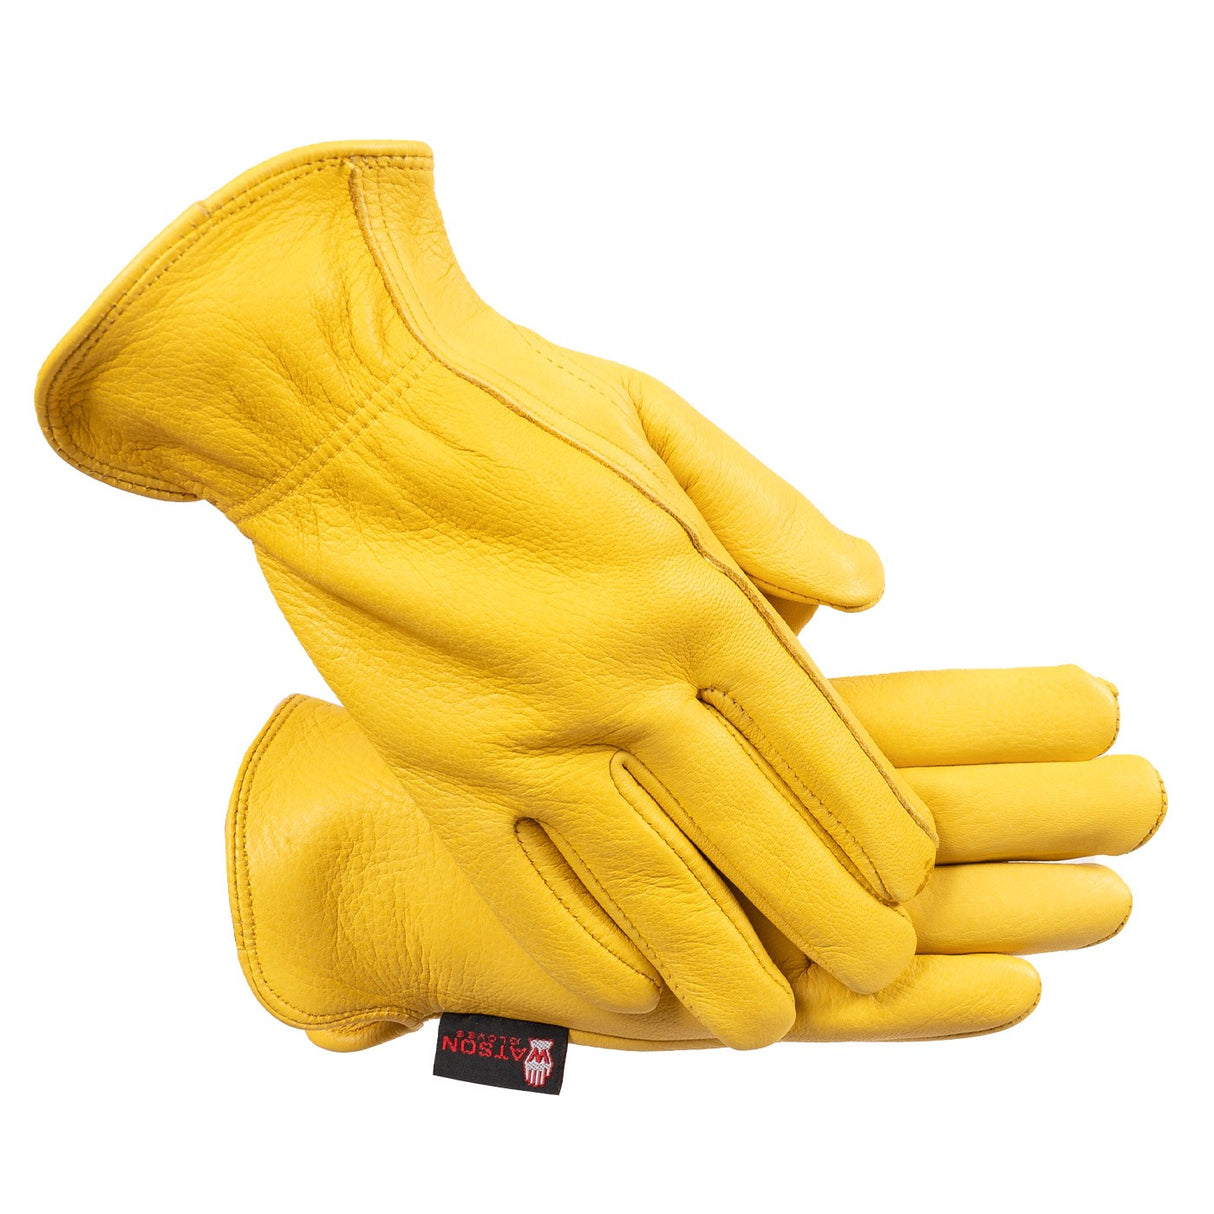 Watson Range Rider Winter Gloves - Men's